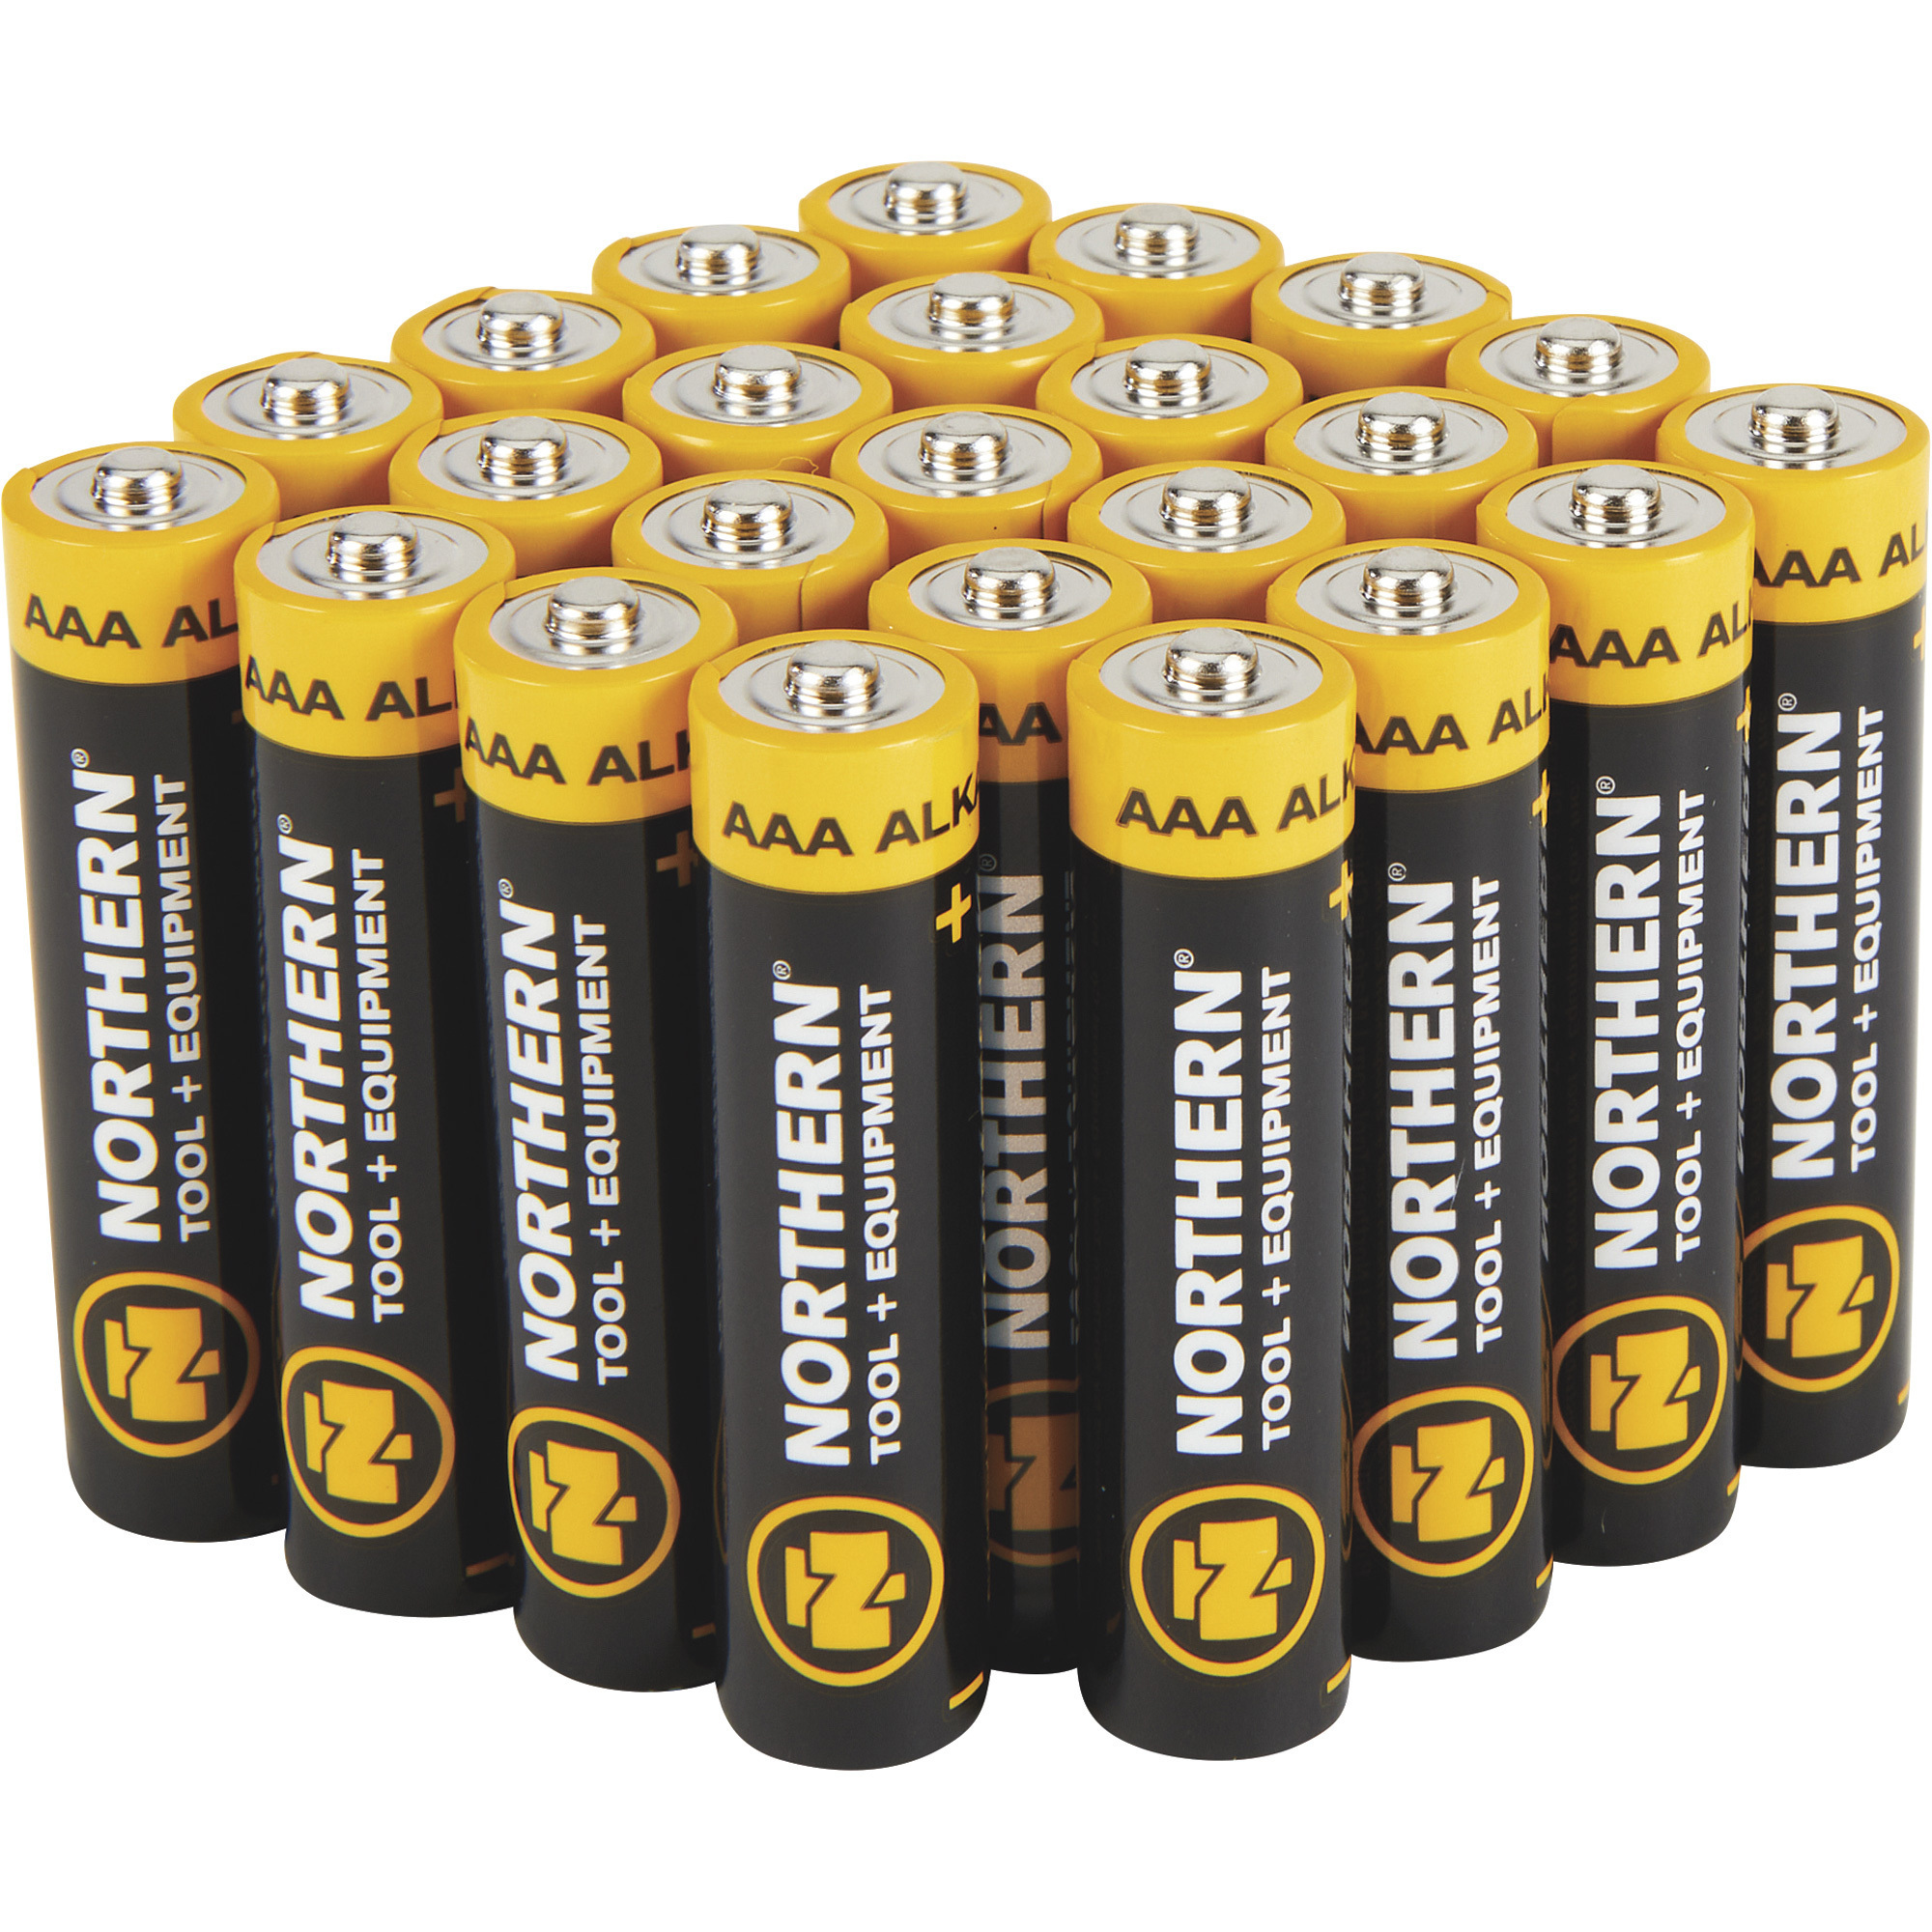 AAA Battery - Alkaline